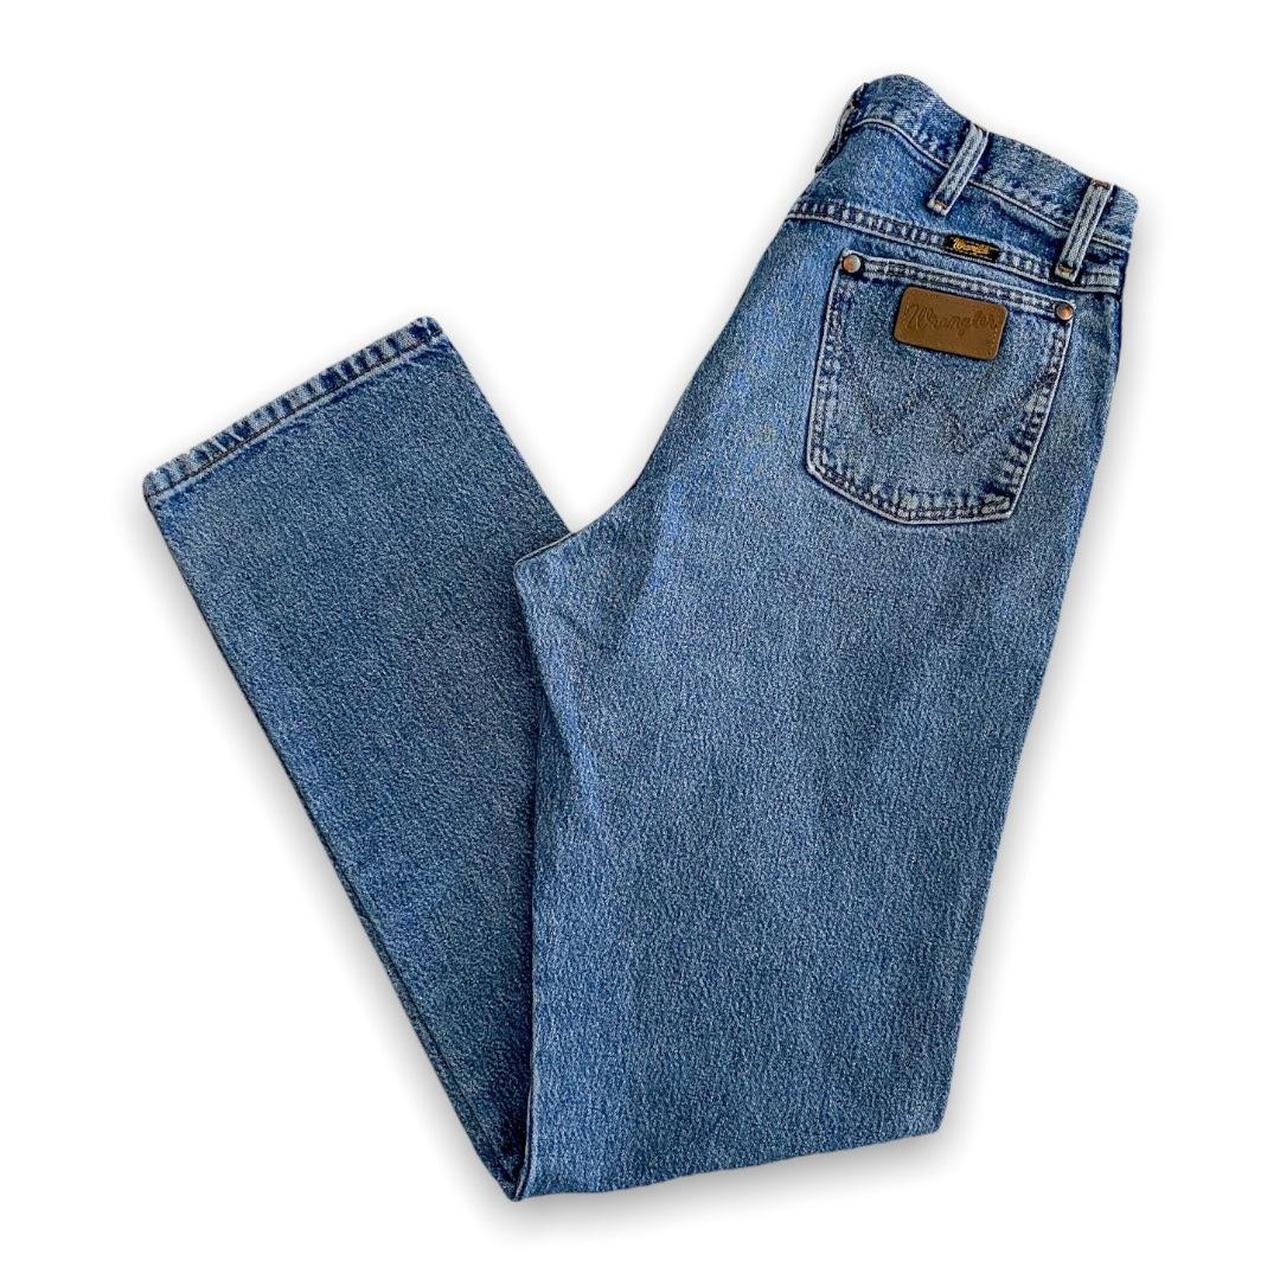 Vintage Wrangler’s Jeans early 2000’s lighter mid... - Depop